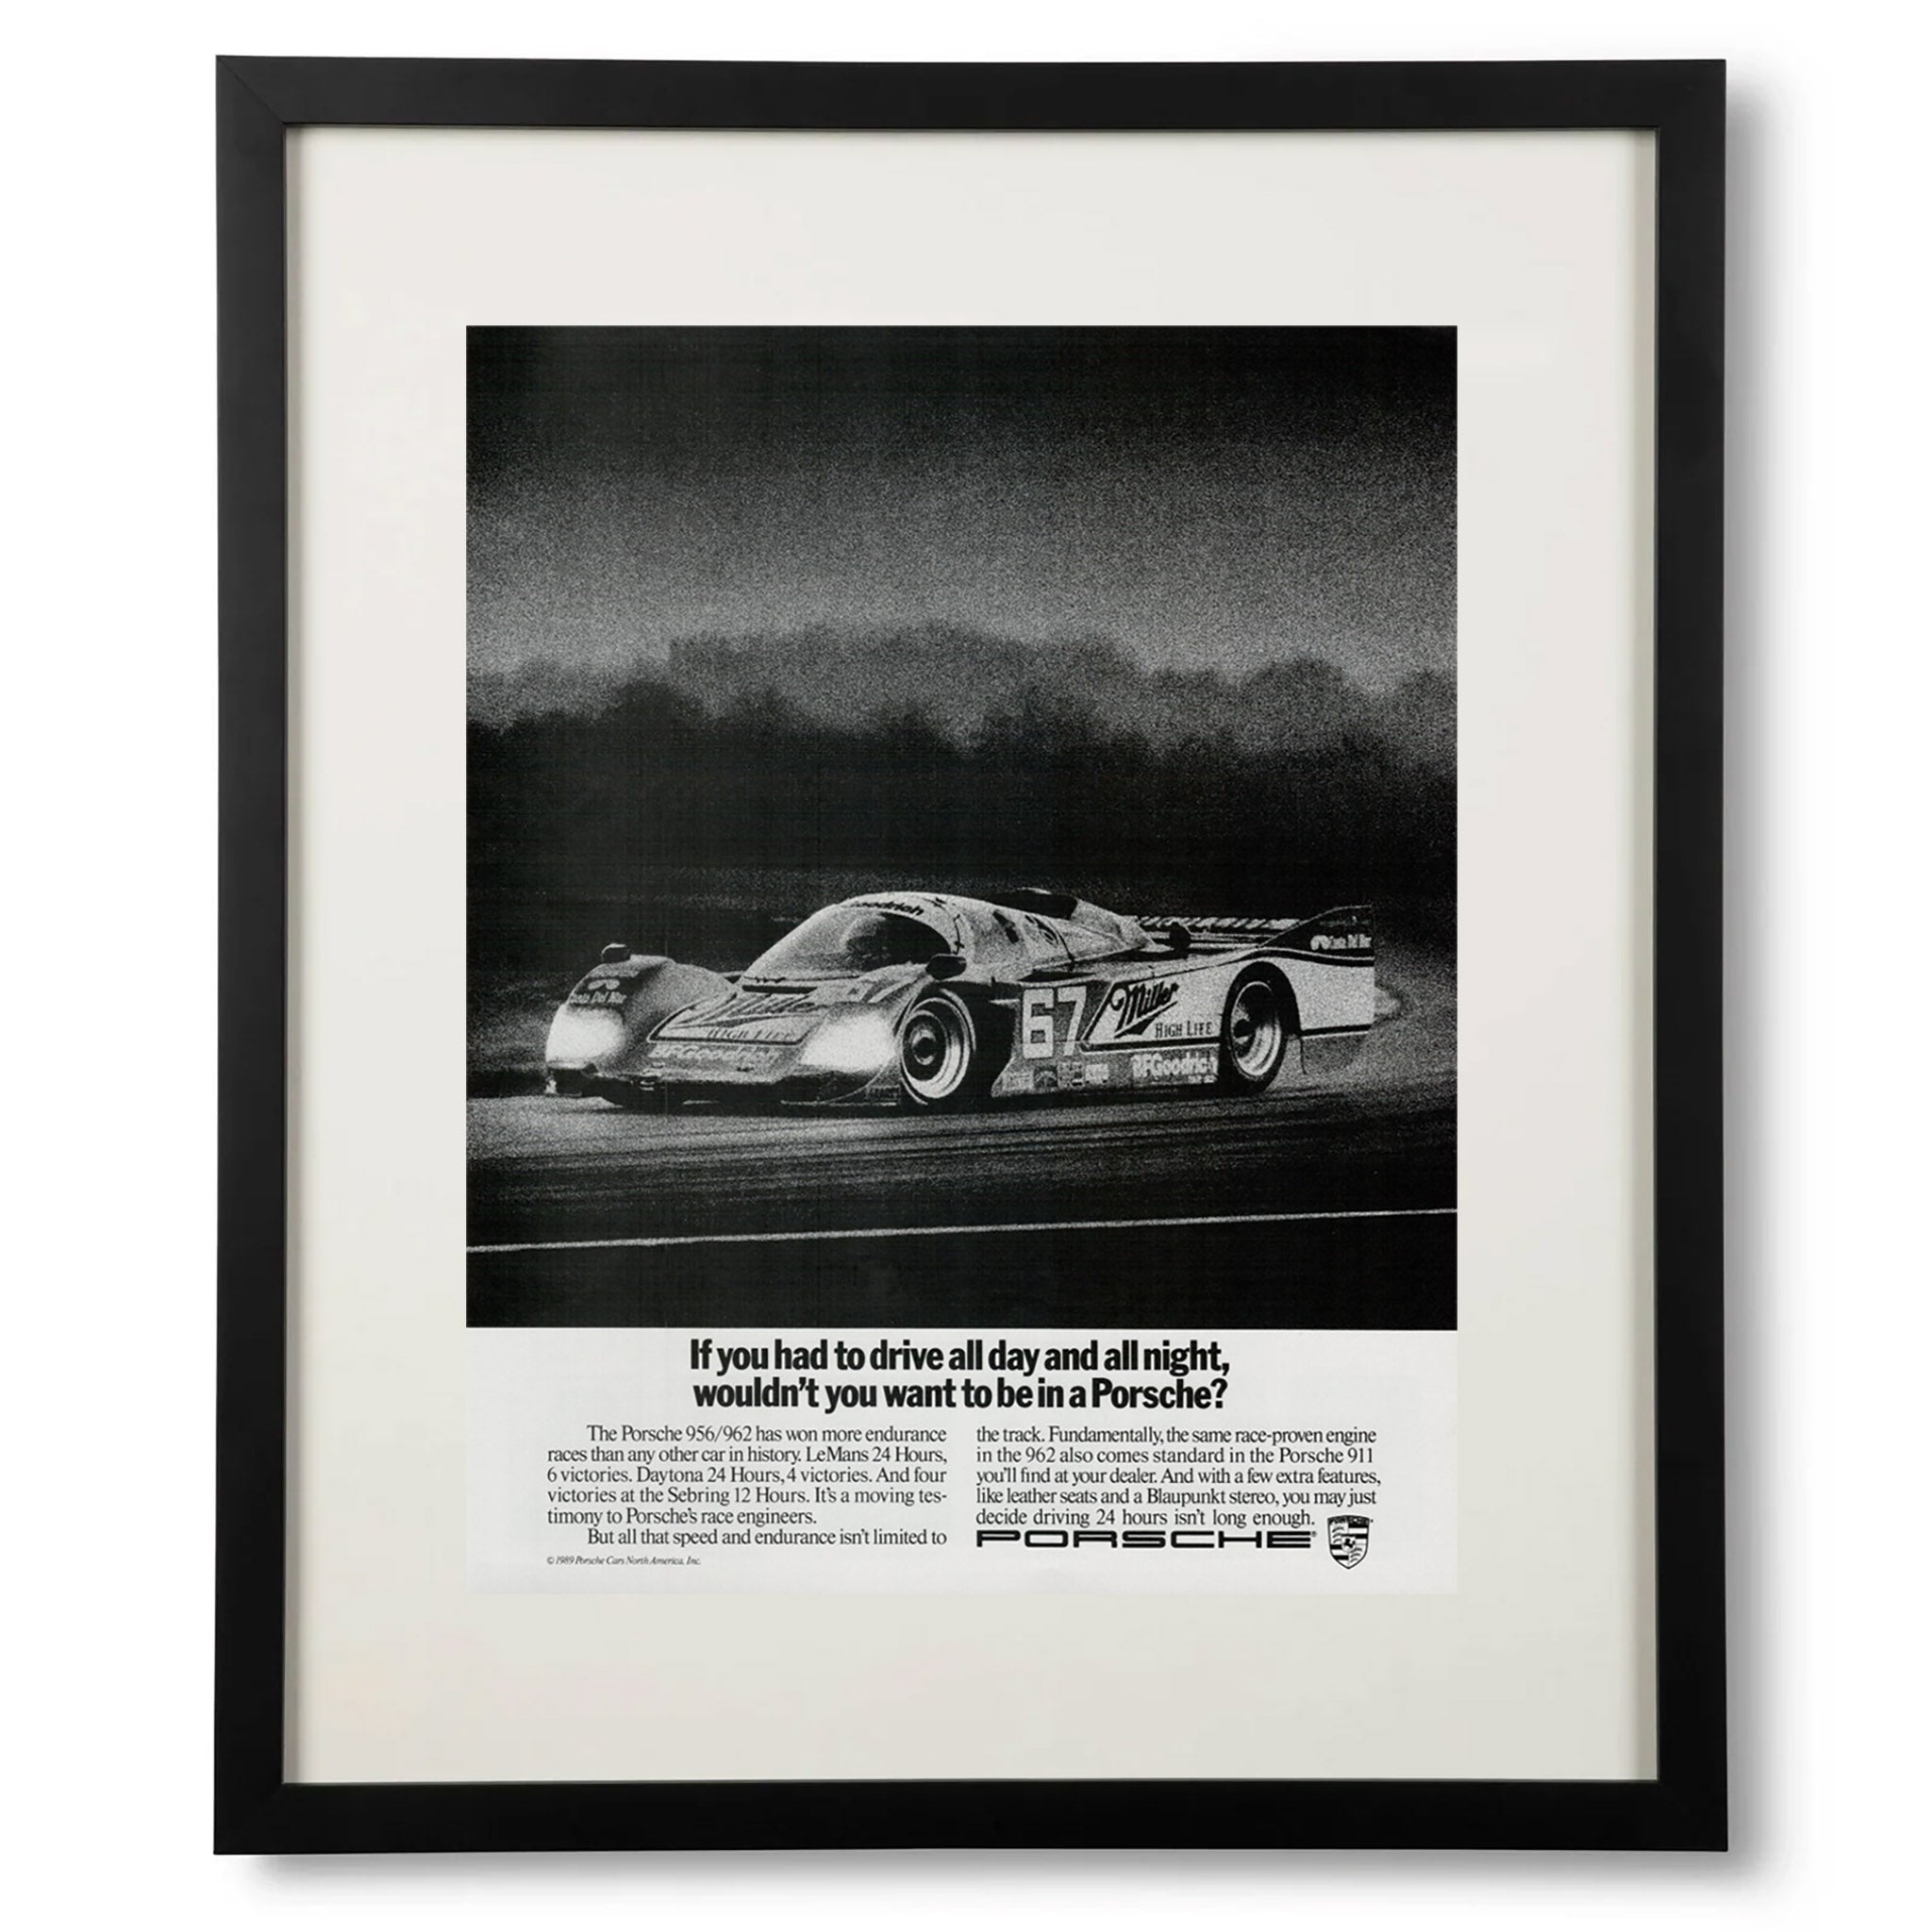 Framed Porsche 956 Endurance Racing Advertisment